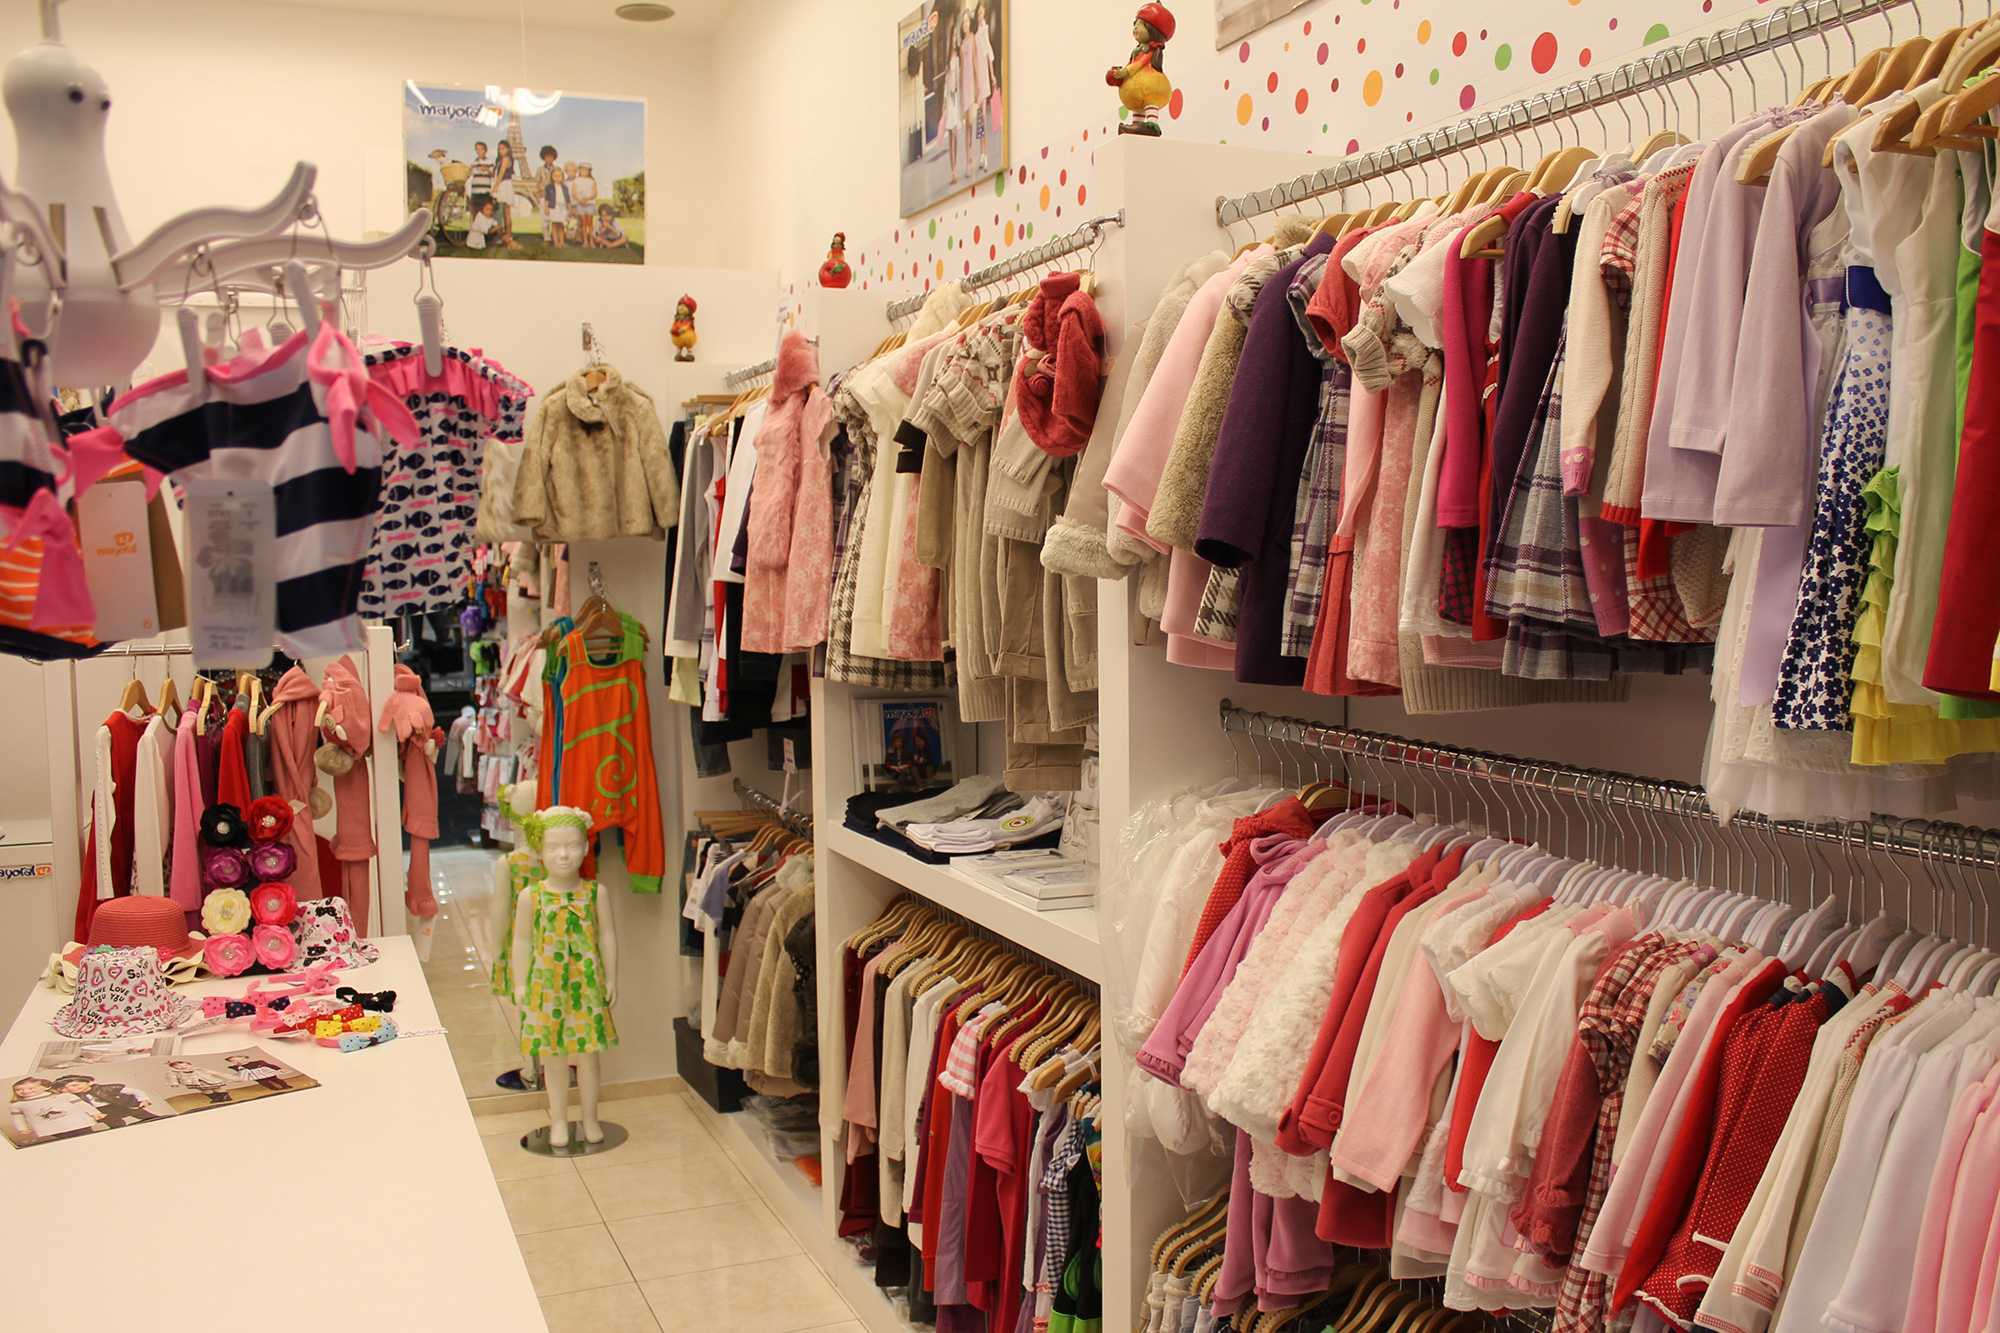 Как открыть магазин детской одежды с нуля: разбор открытия бизнеса по этапам